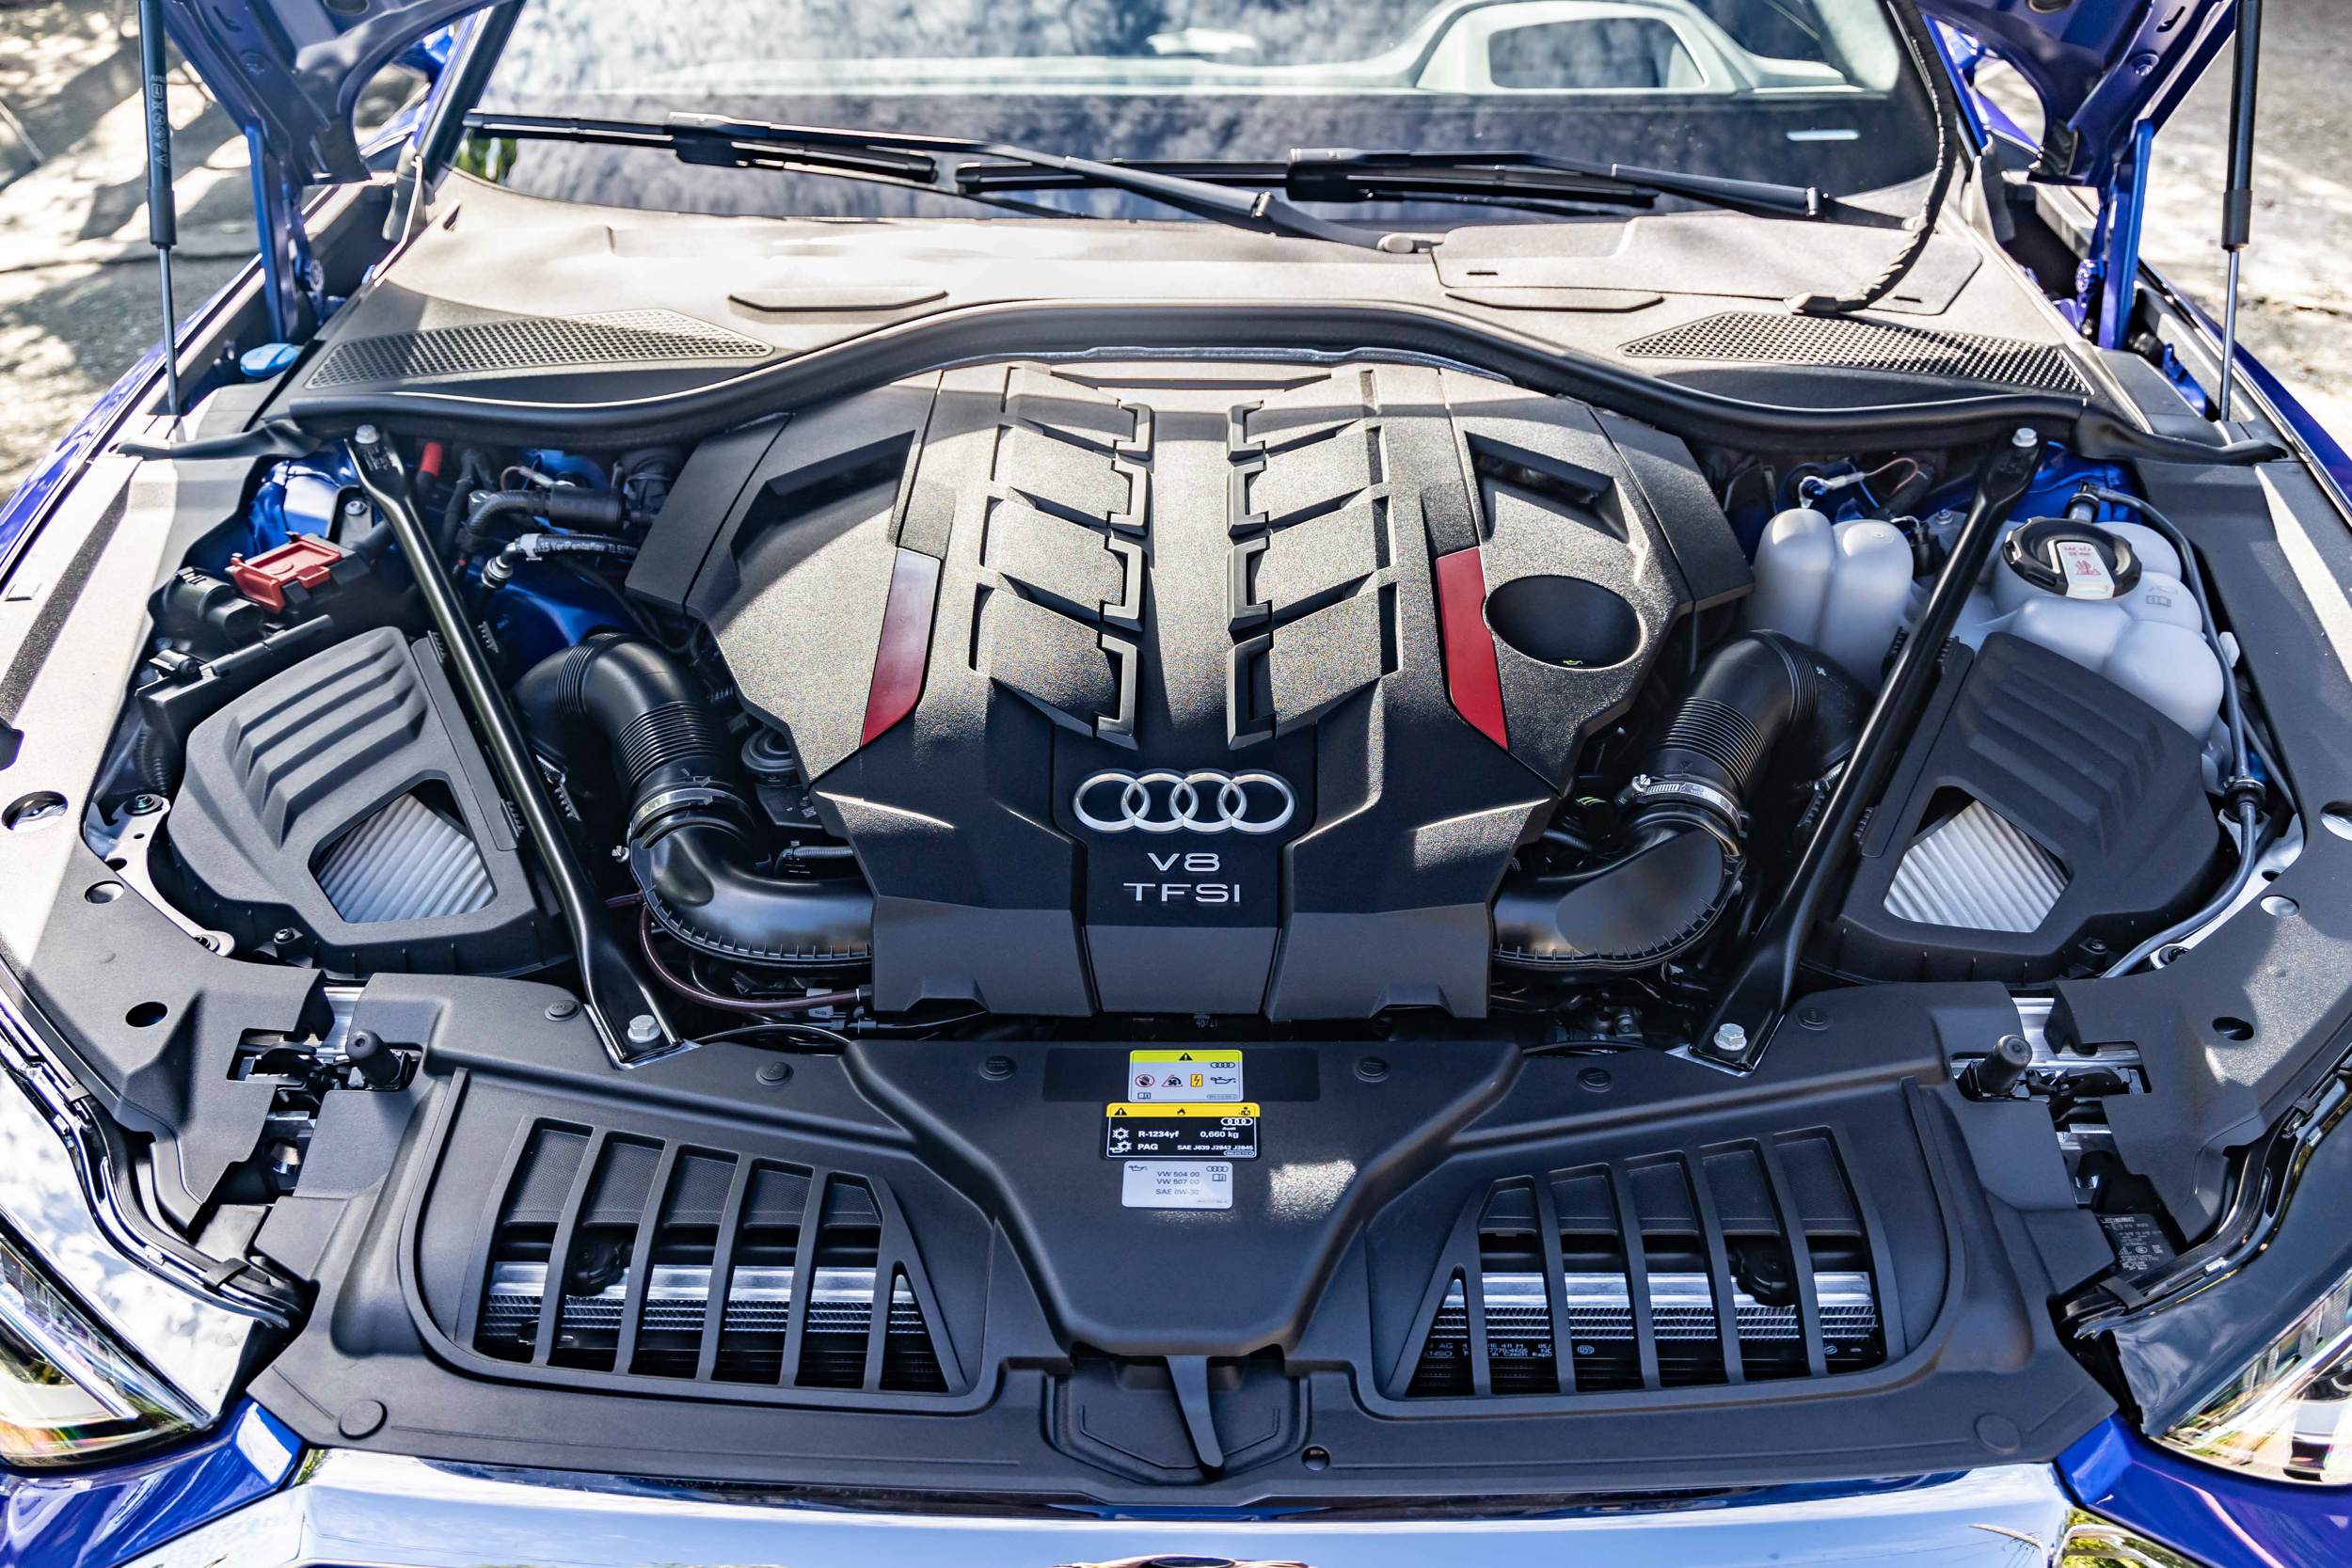 這具 V8 TFSI 可說是 Audi 對於內燃機世代最後的致敬了。